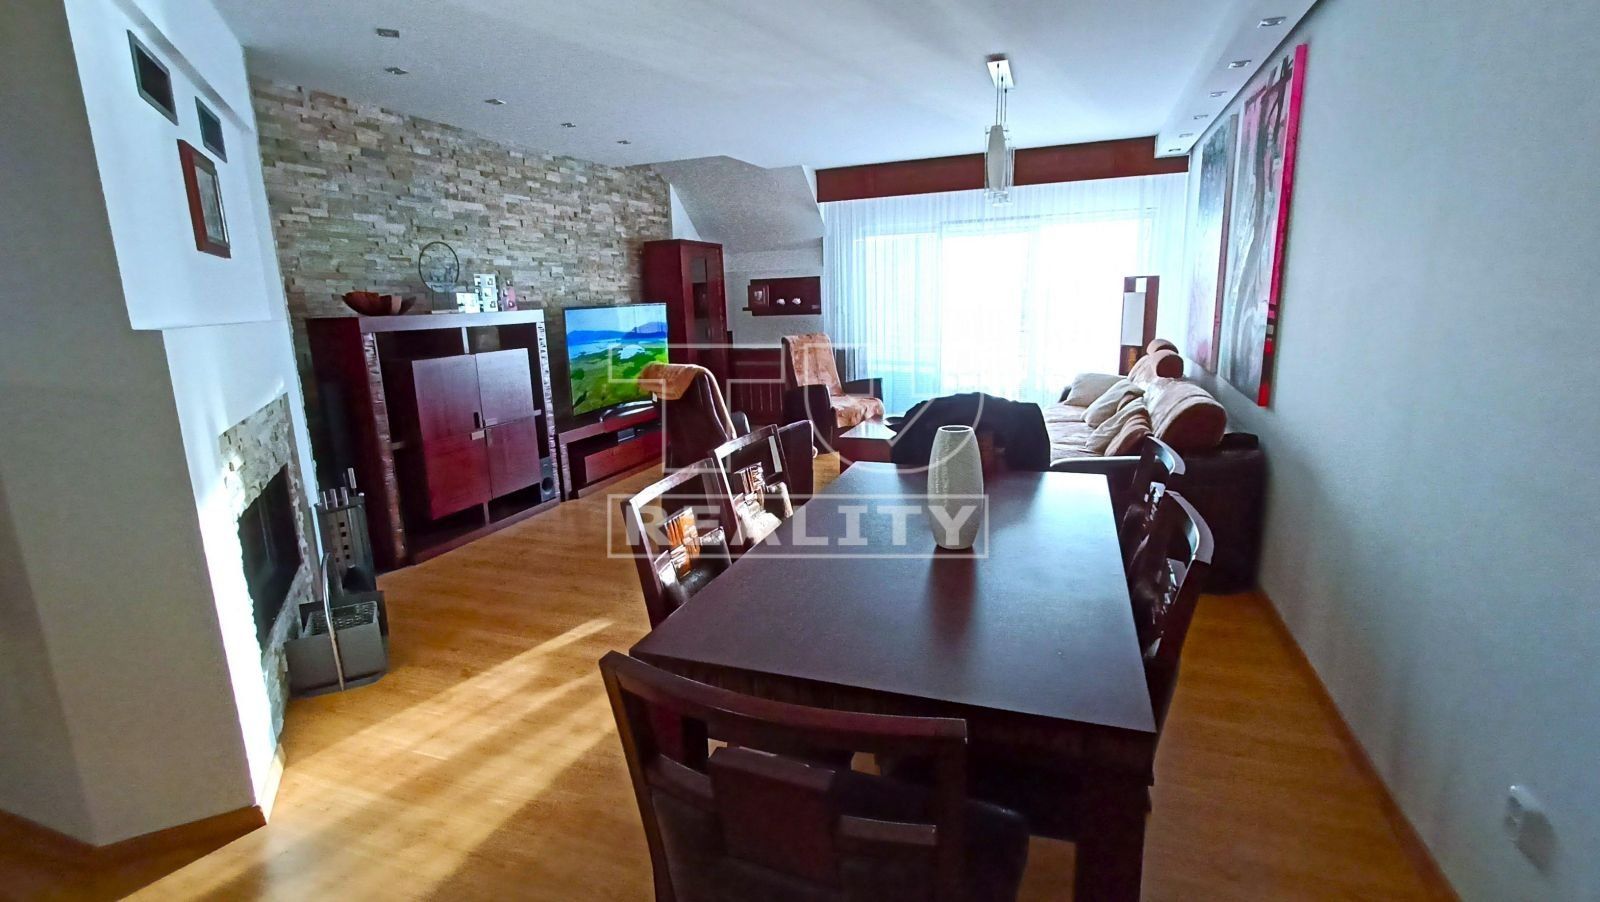 TUreality ponúka na predaj veľký mezonetový byt v centre Topoľčian, 230m2